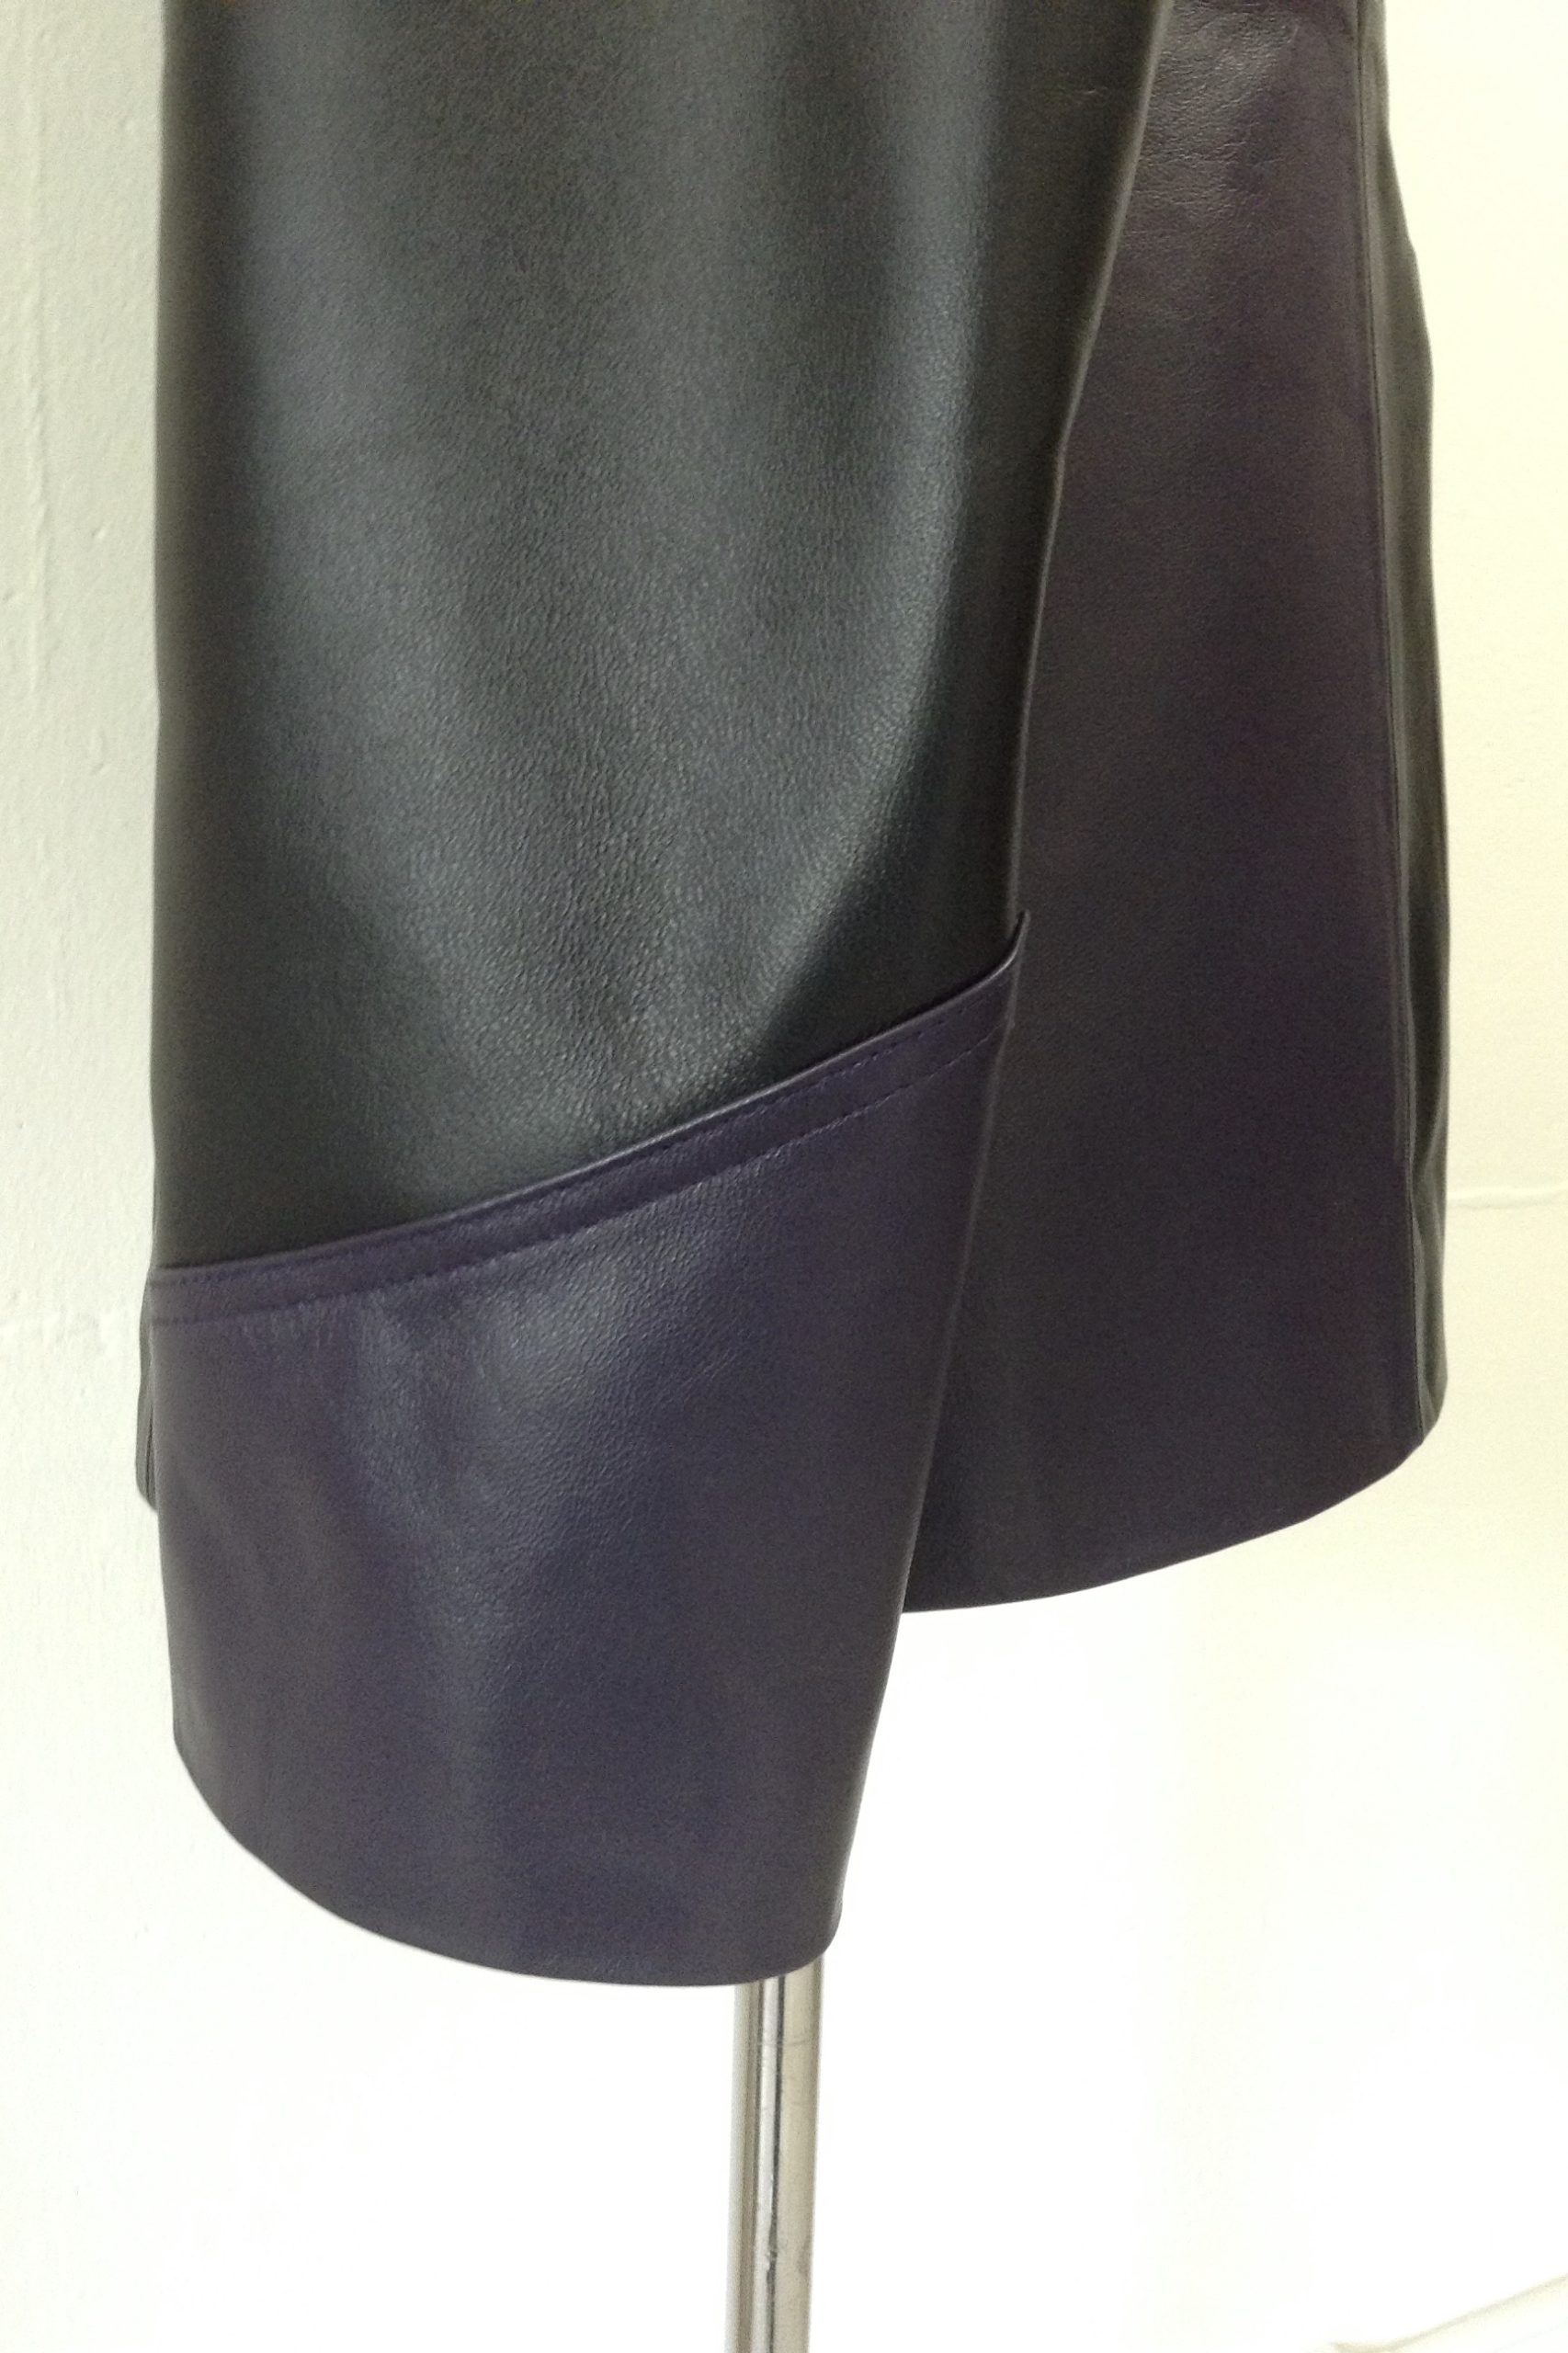 Purple and Black Nappa leather budgie jacket – Mendoza Menswear